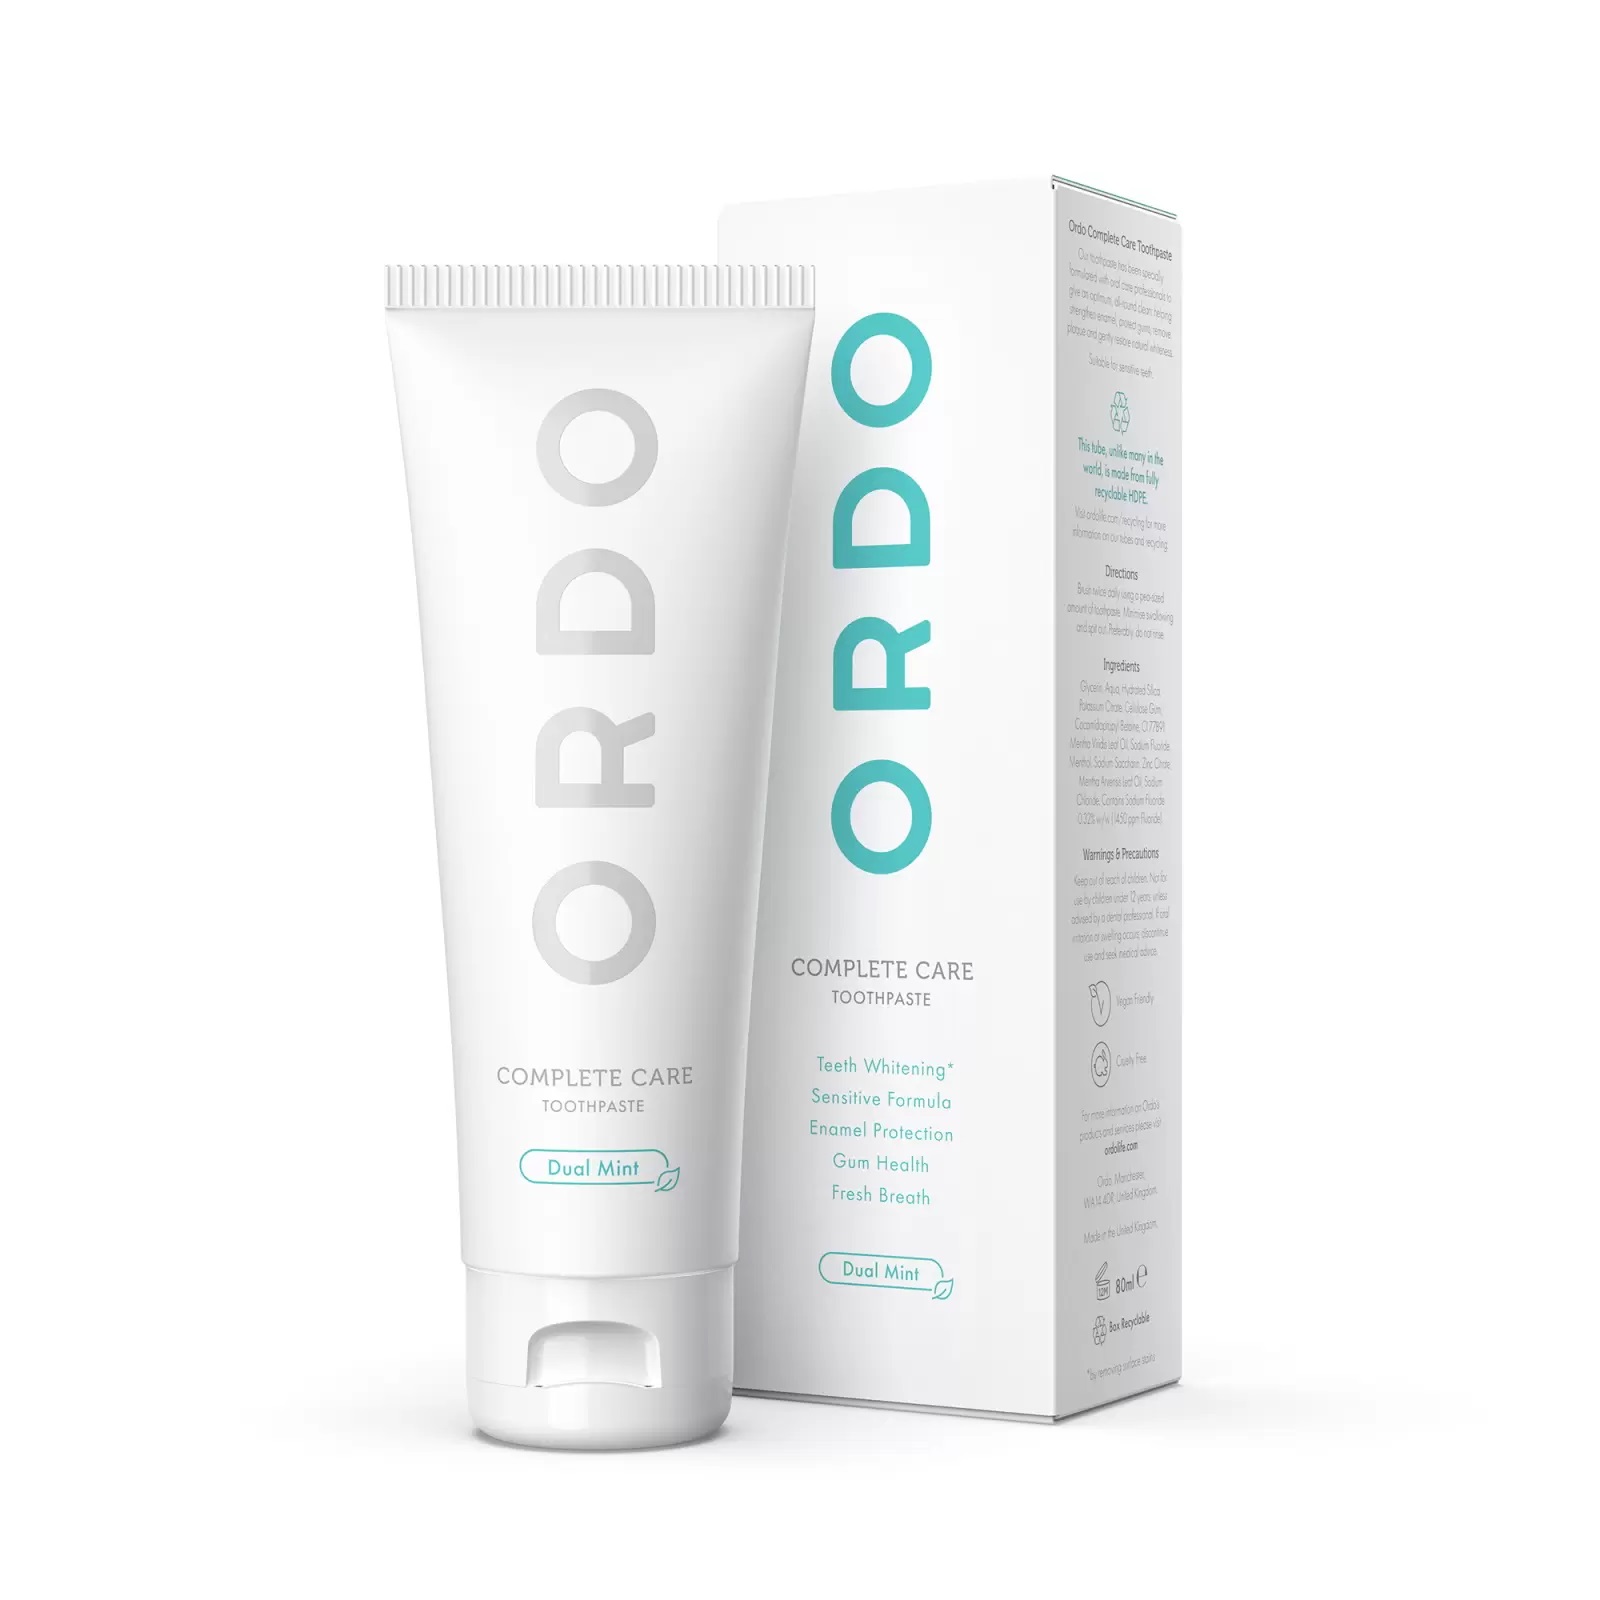 Зубная паста Ordo Ordo Complete Care, 80 мл натуральная зубная паста для восстановления естественной белизны зубов innature whitening 100 мл